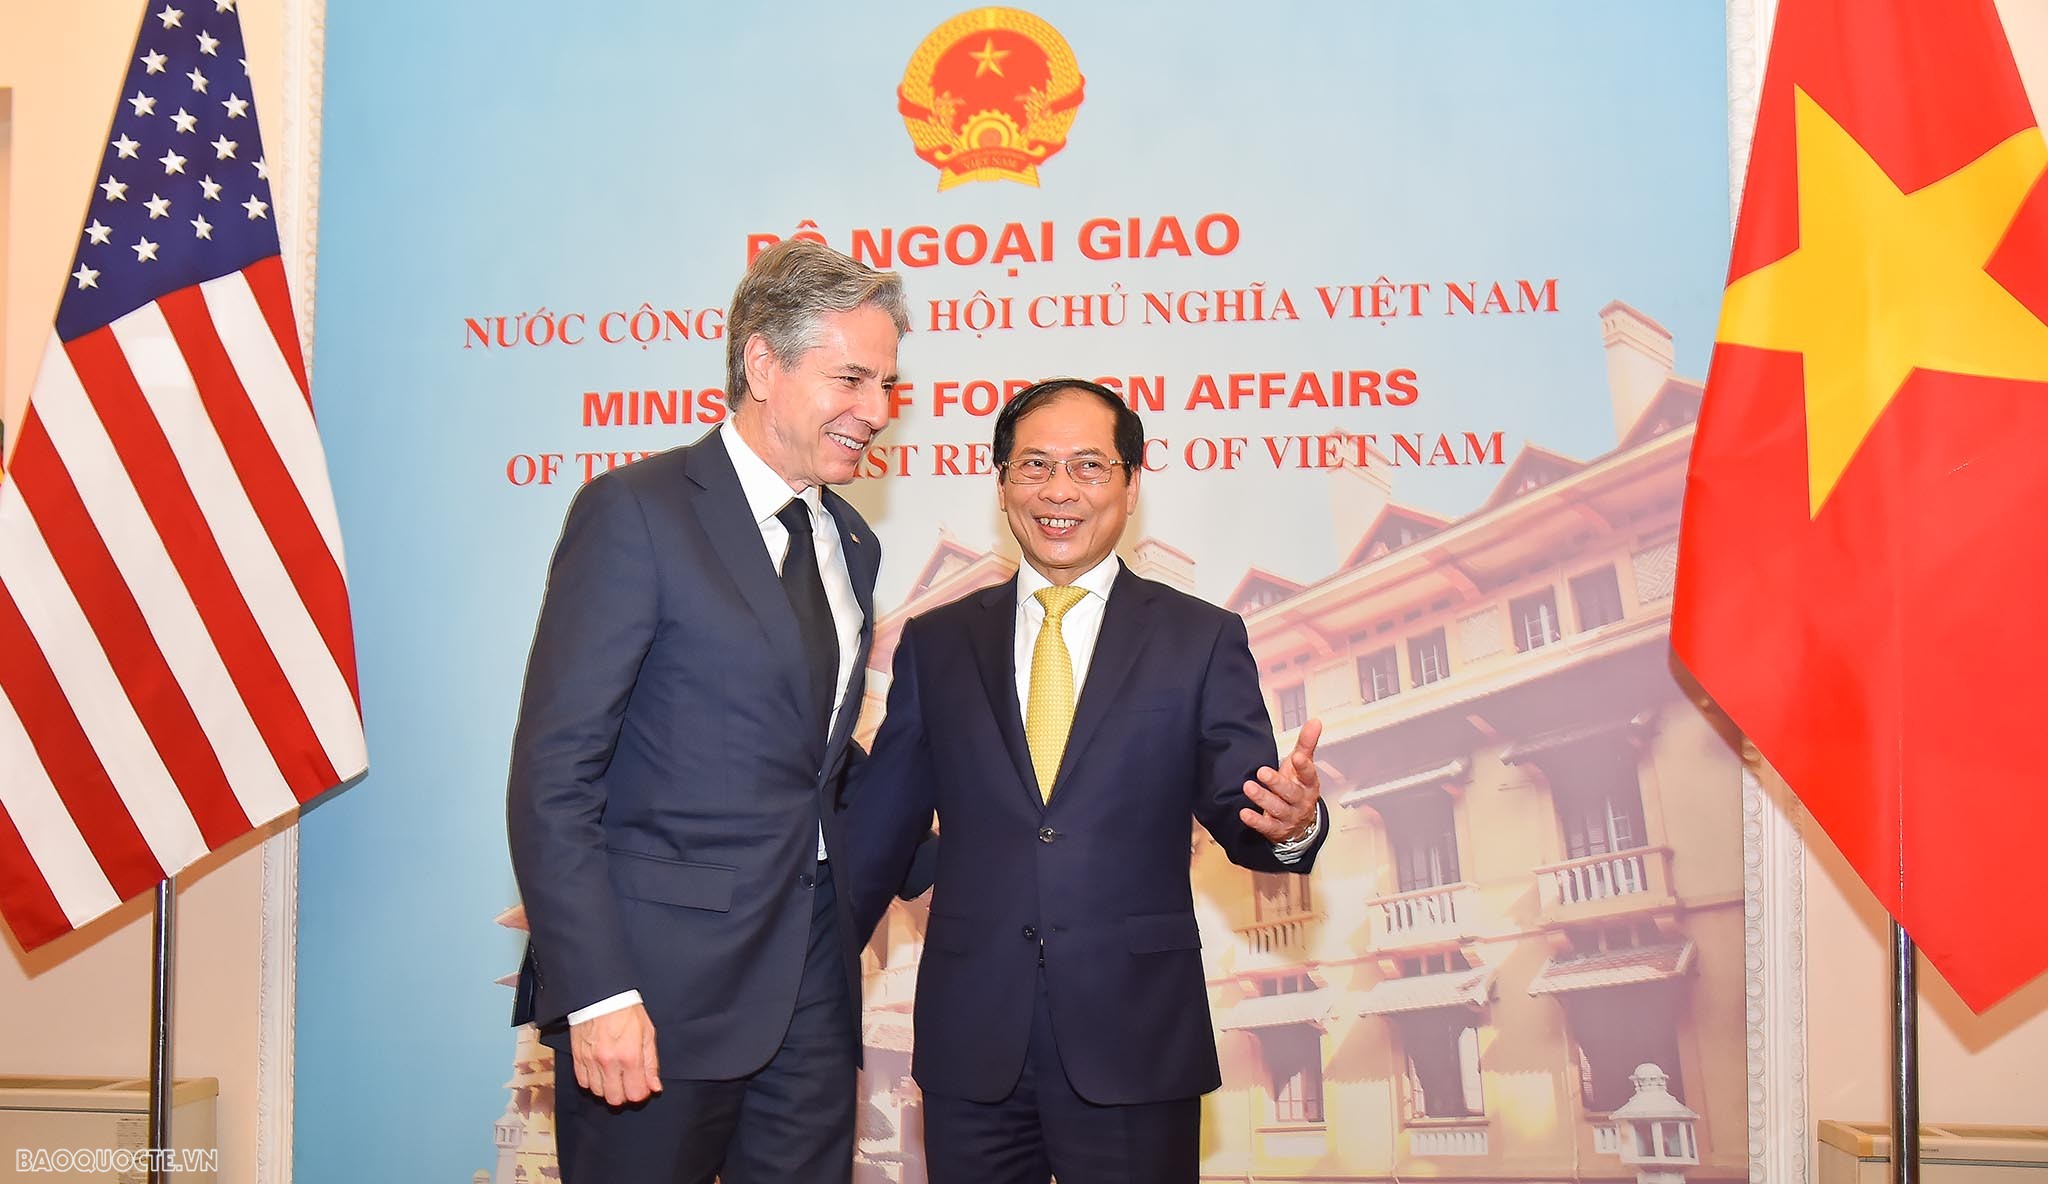 Đây là chuyến thăm đầu tiên của ông Antony Blinken trên cương vị Ngoại trưởng Hoa Kỳ và là chuyến thăm đầu tiên của Ngoại trưởng Hoa Kỳ tới Việt Nam dưới thời Tổng thống Joe Biden.